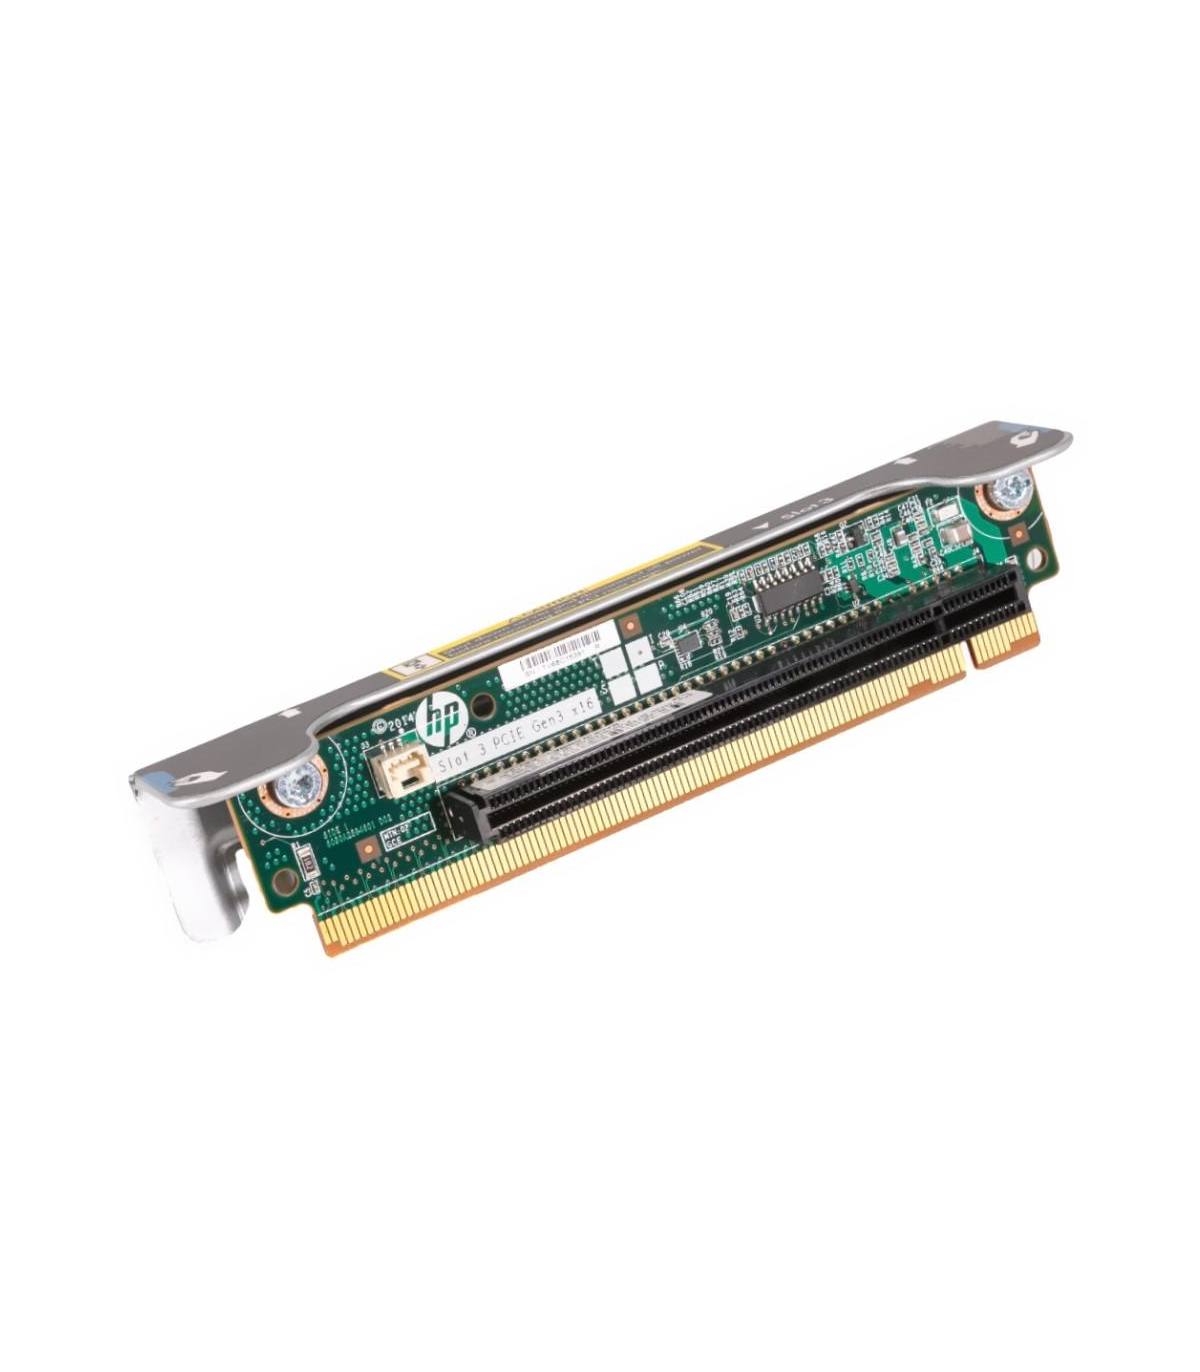 HP DL360 GEN9 PCI RISER BOARD 779157-001